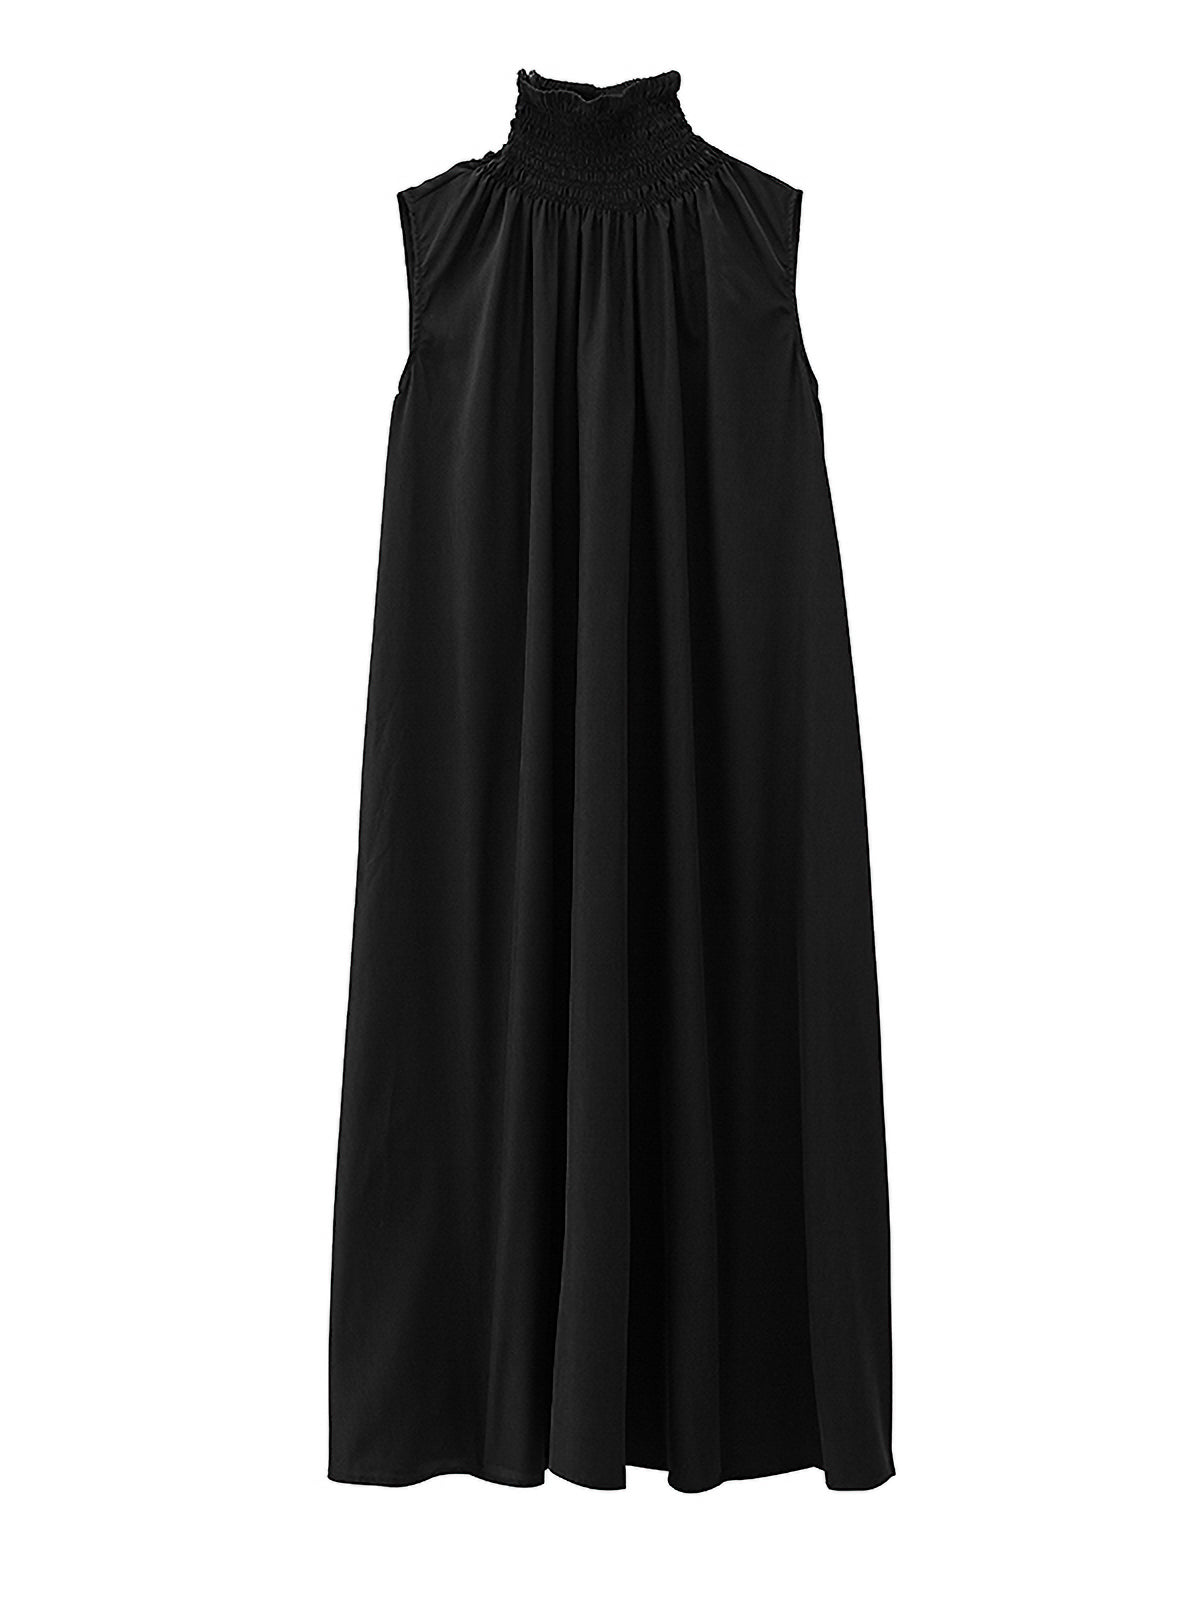 turtleneck black dress 